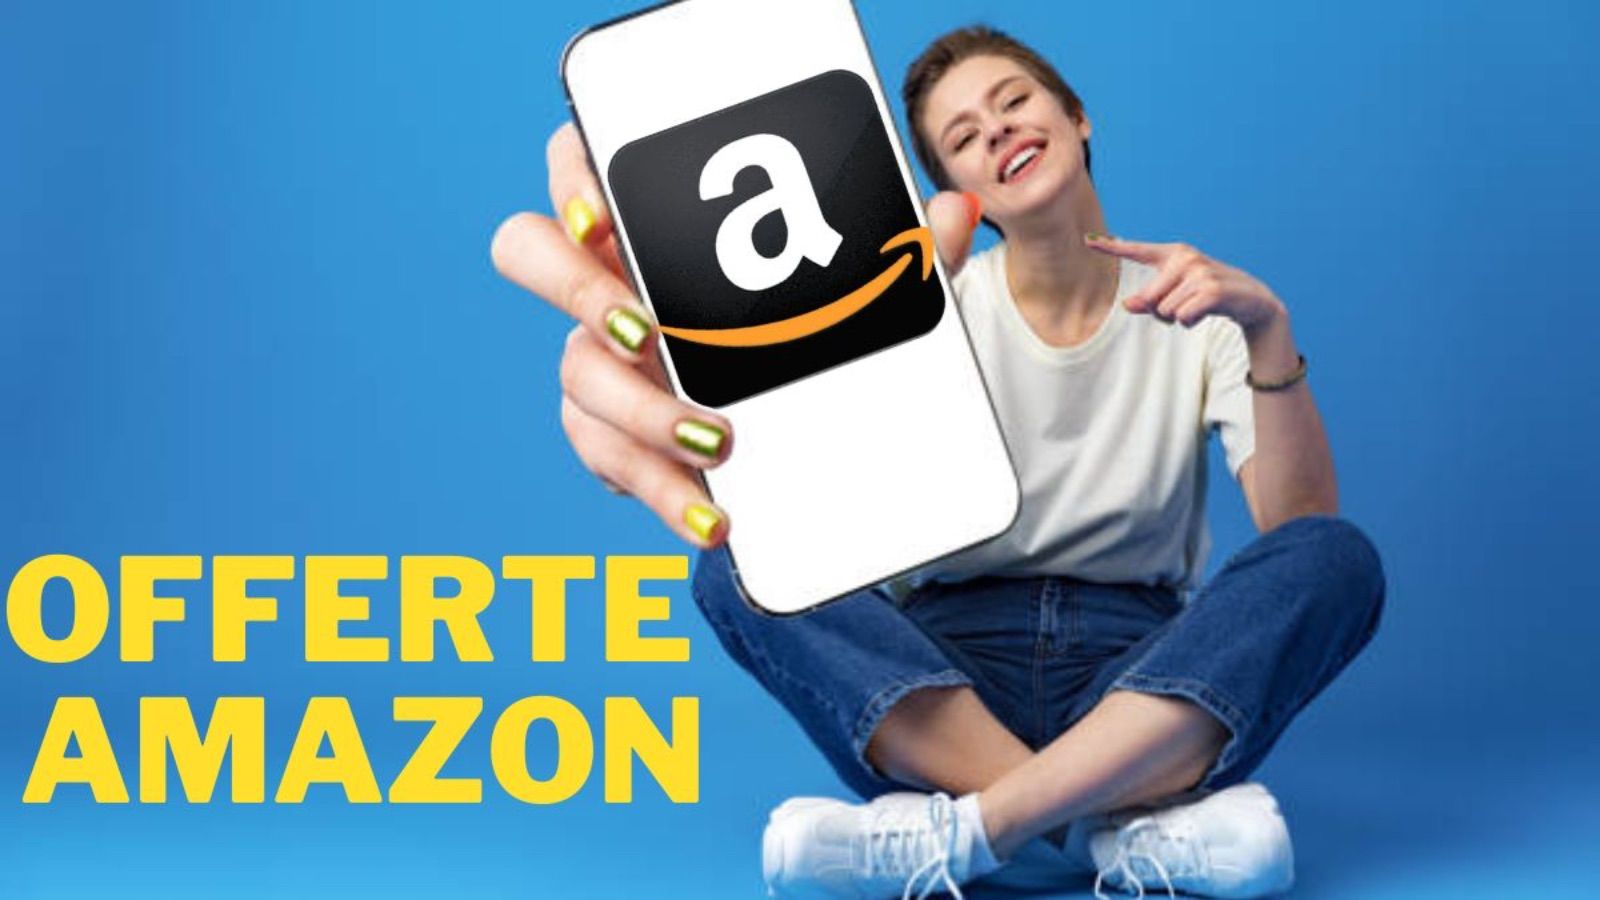 Amazon, trucco definitivo per avere gratis le offerte al 70%